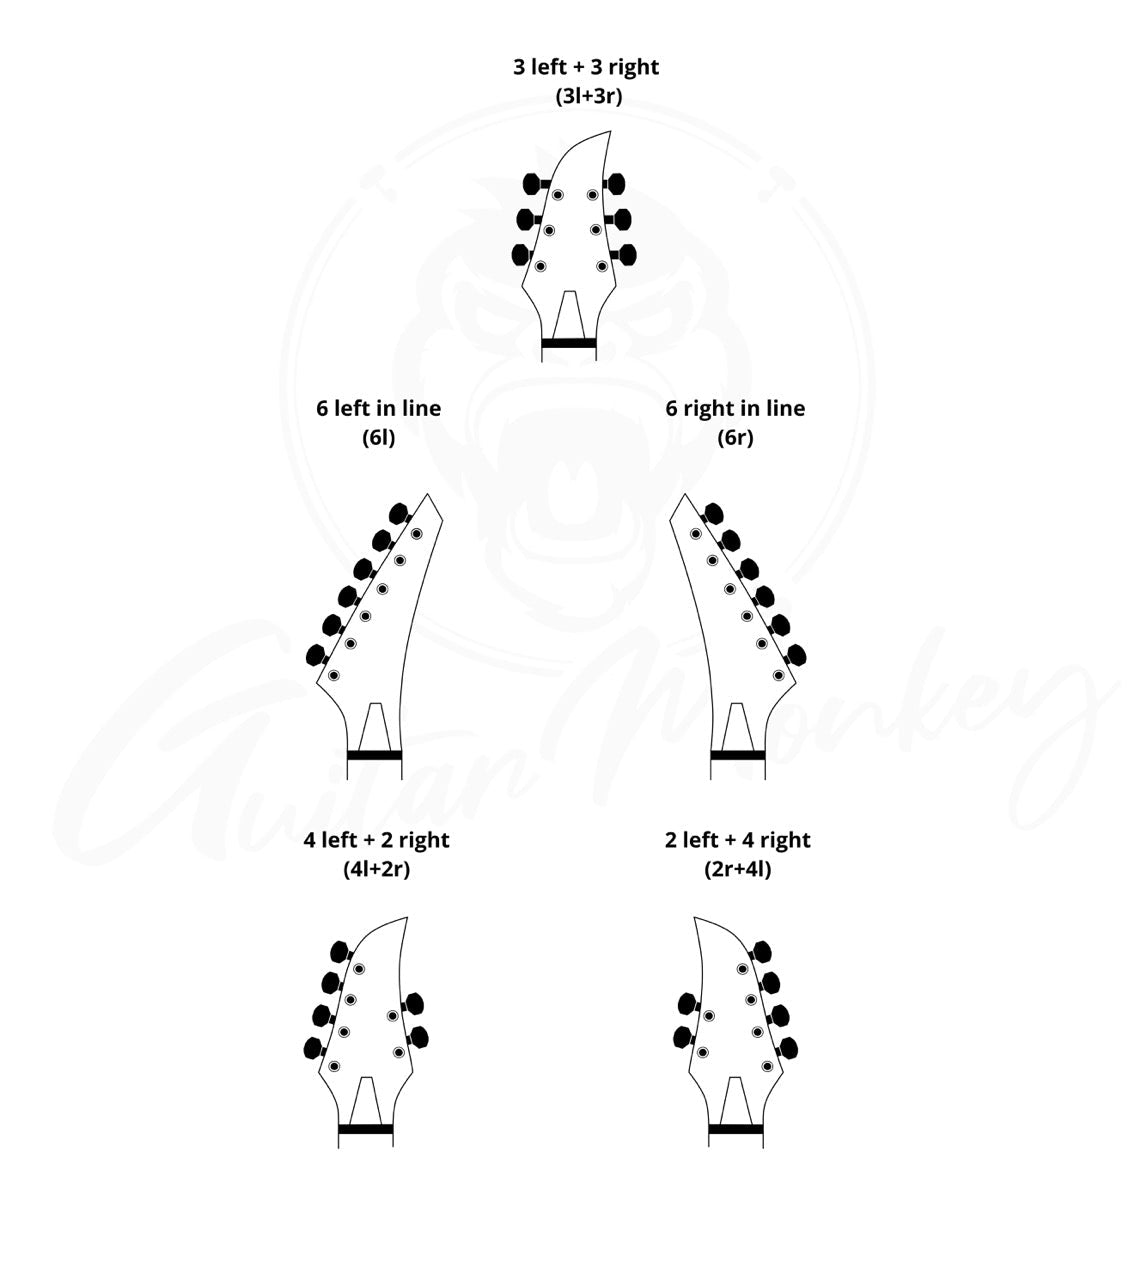 6-String BARITONE Set - Monkey Locks - Locking Tuners - Gitarren Klemm Mechaniken - Small German Tamarindenholz Buttons - Guitar Monkey